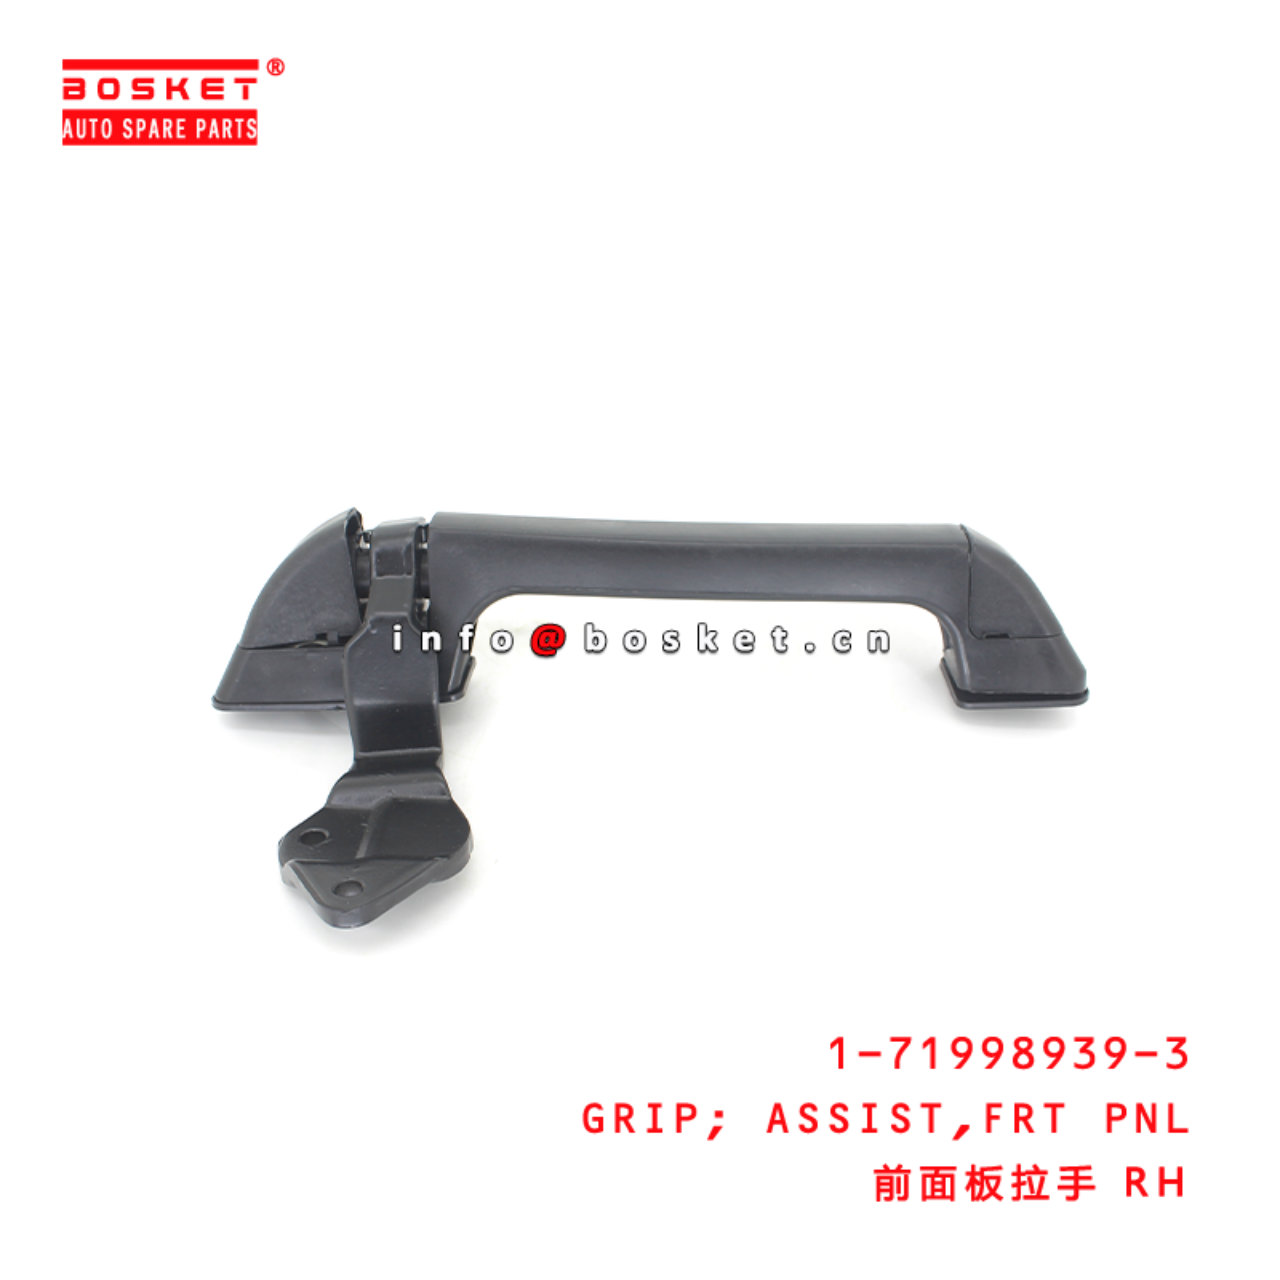 1-71998939-3 Front Pnl Assist Grip suitable for ISUZU CXZ81 10PE1 1719989393